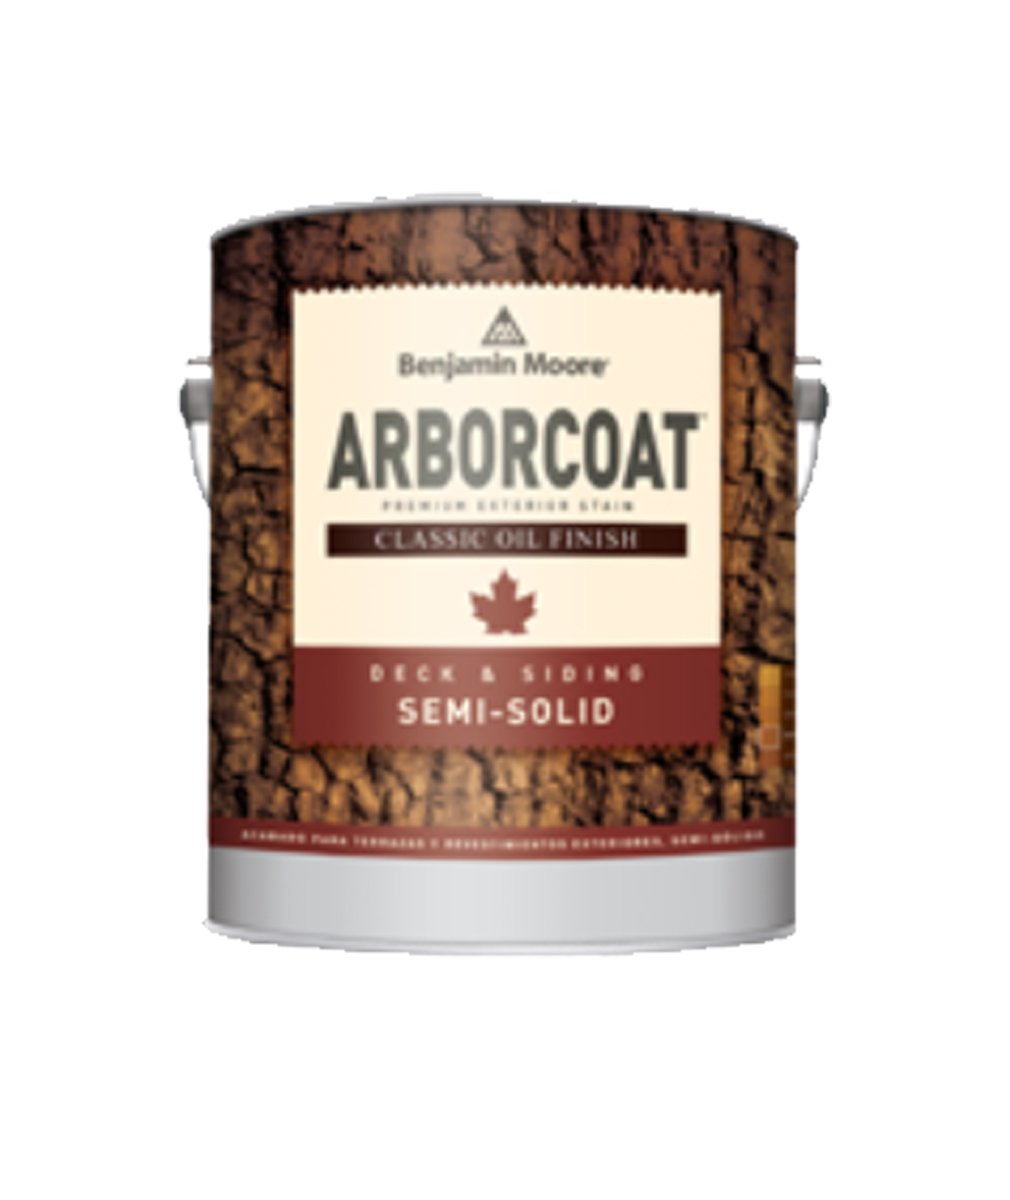 Arborcoat Semi-Solid Classic Oil Finish (Quart)